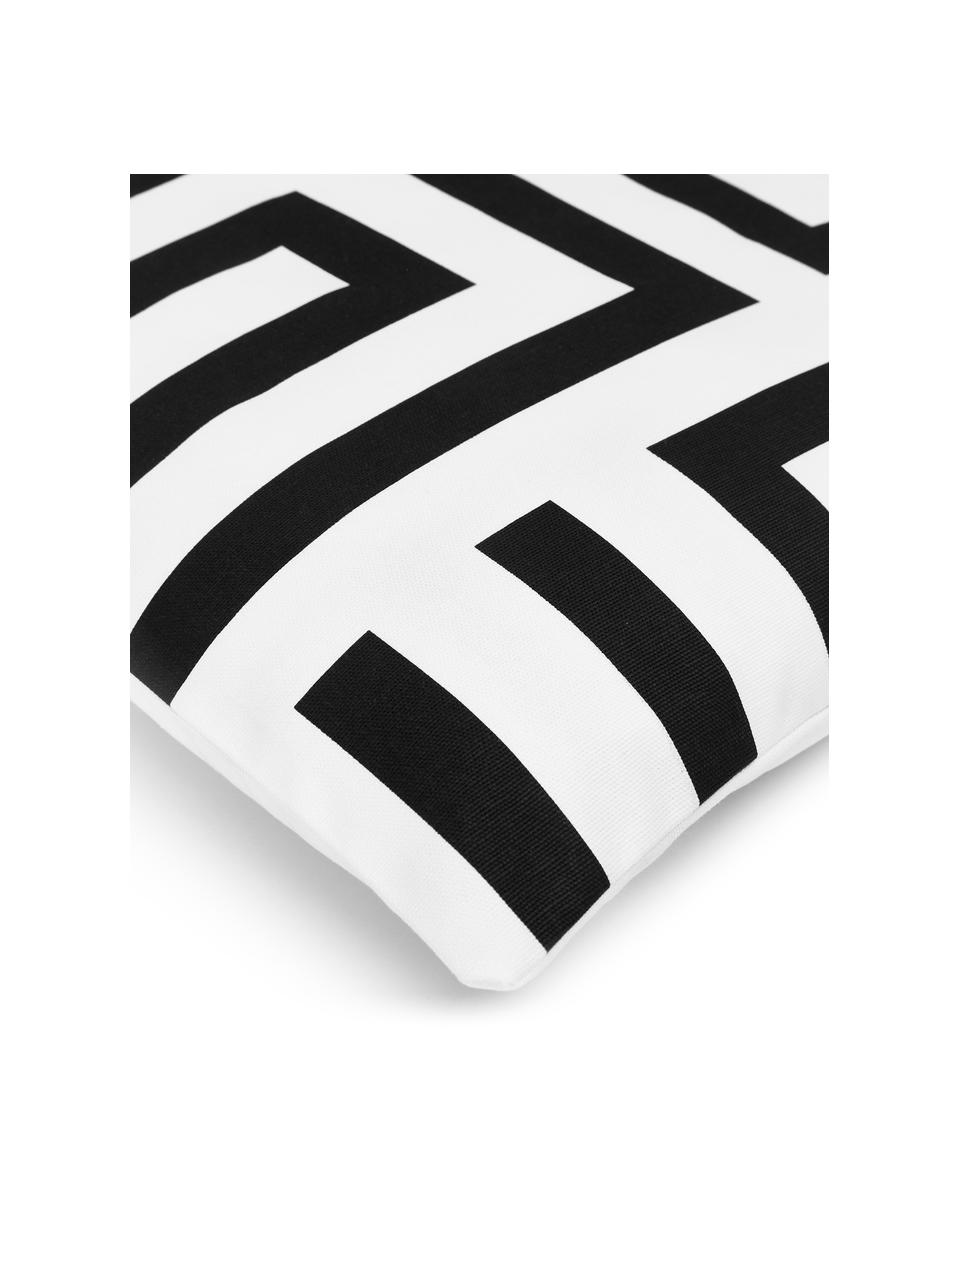 Katoenen kussenhoes Bram met grafisch patroon, 100% katoen, Zwart, wit, B 45 x L 45 cm